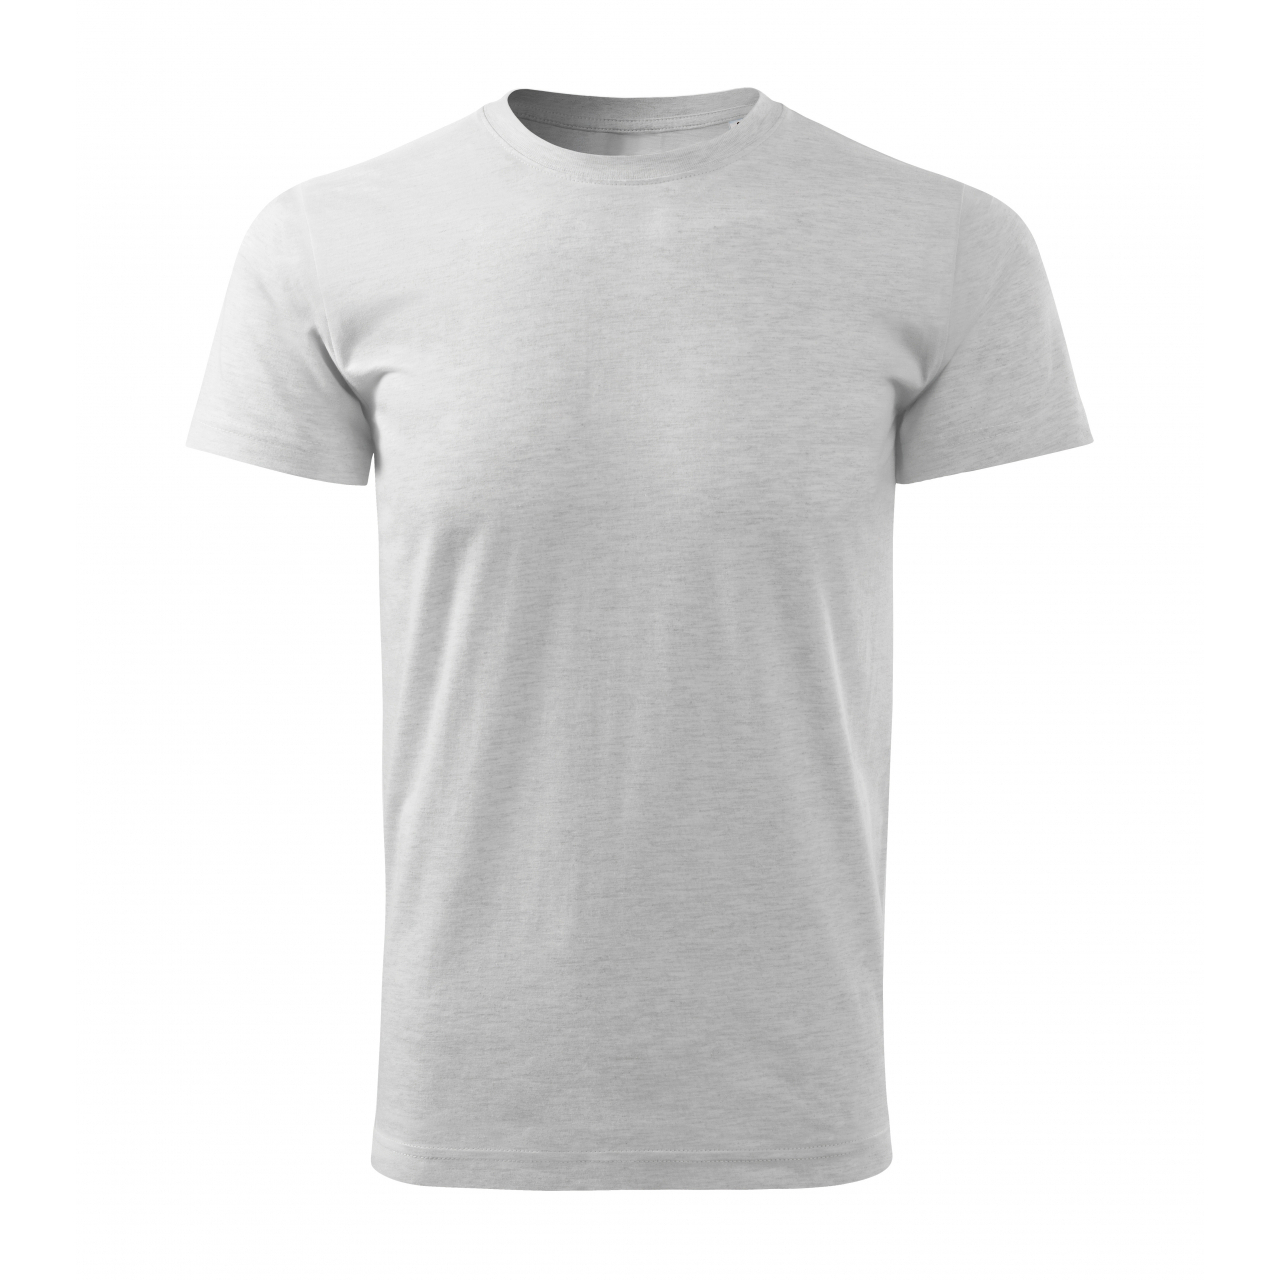 Tričko pánské Malfini Basic Free - světle šedé, XL